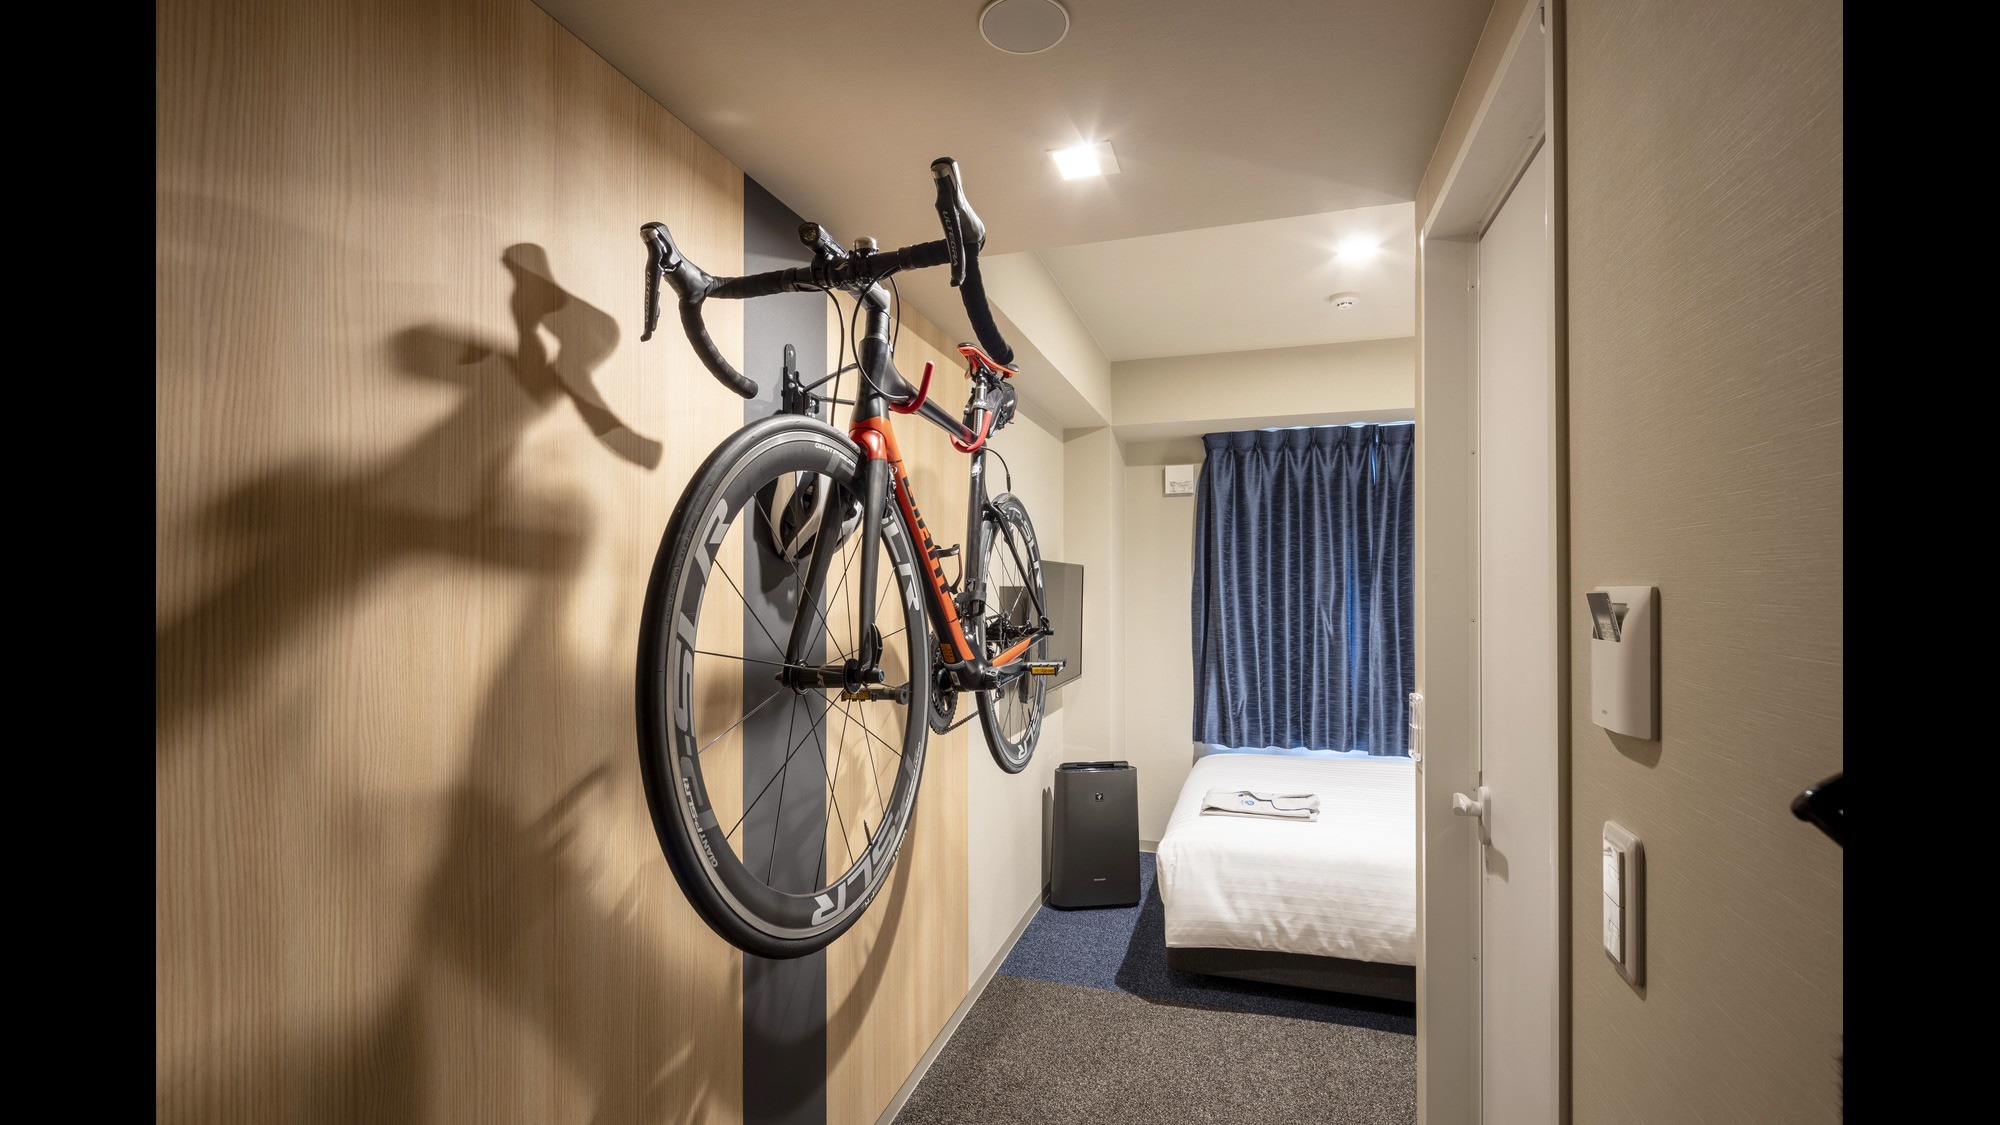 ห้องเดี่ยวจักรยานนำจักรยานได้หนึ่งคัน